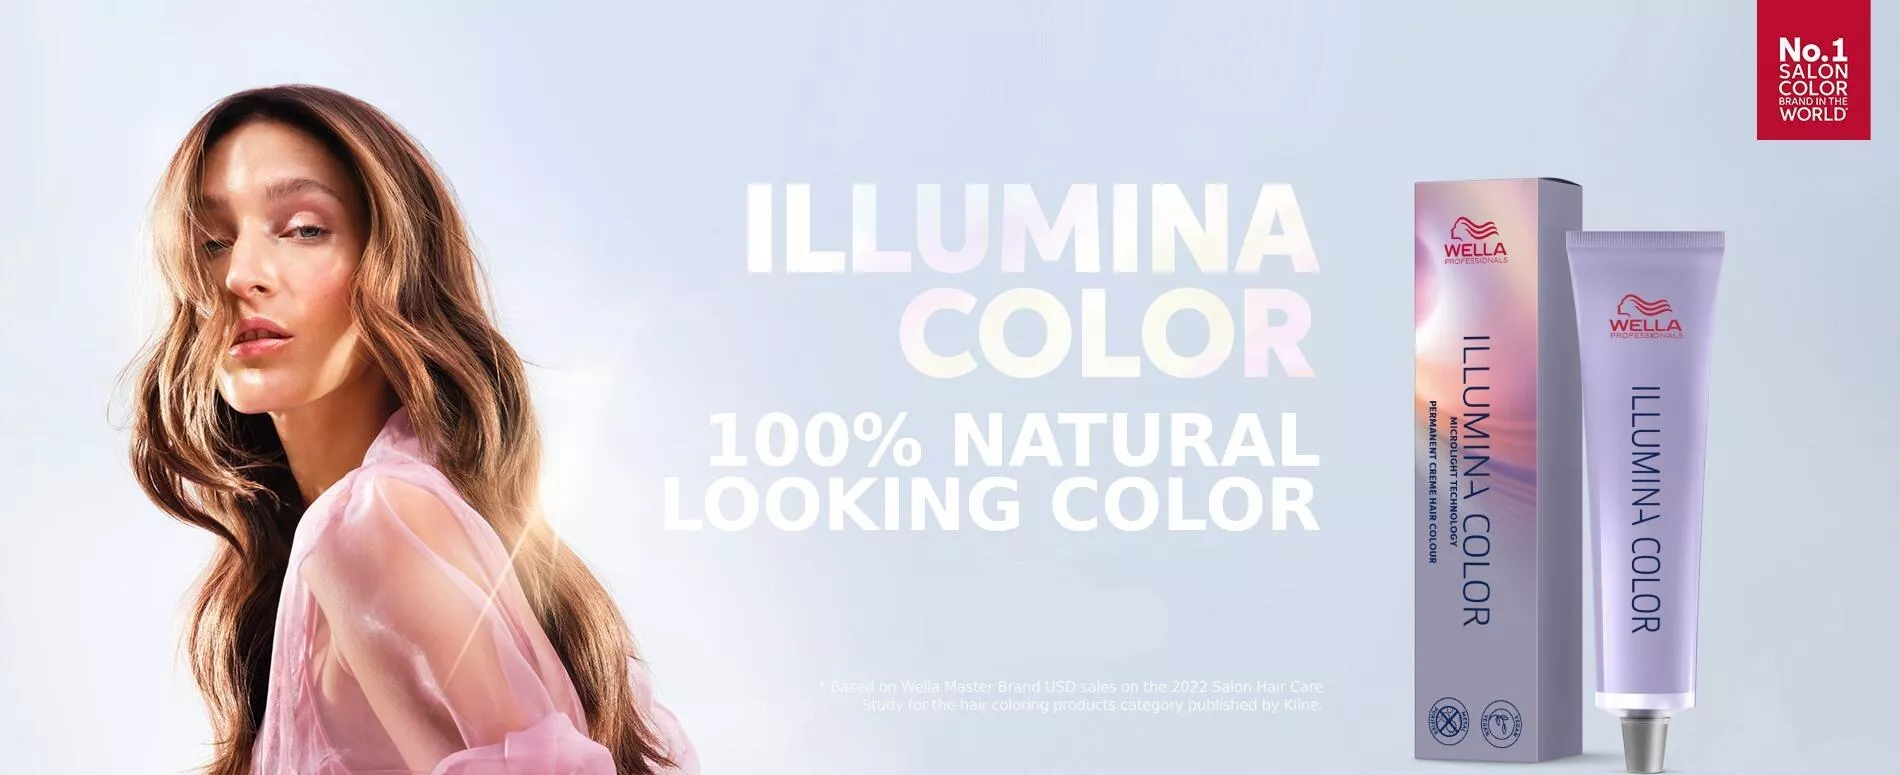 Femme sur la plage aux cheveux blonds bouclés sublimés par Illumina Color